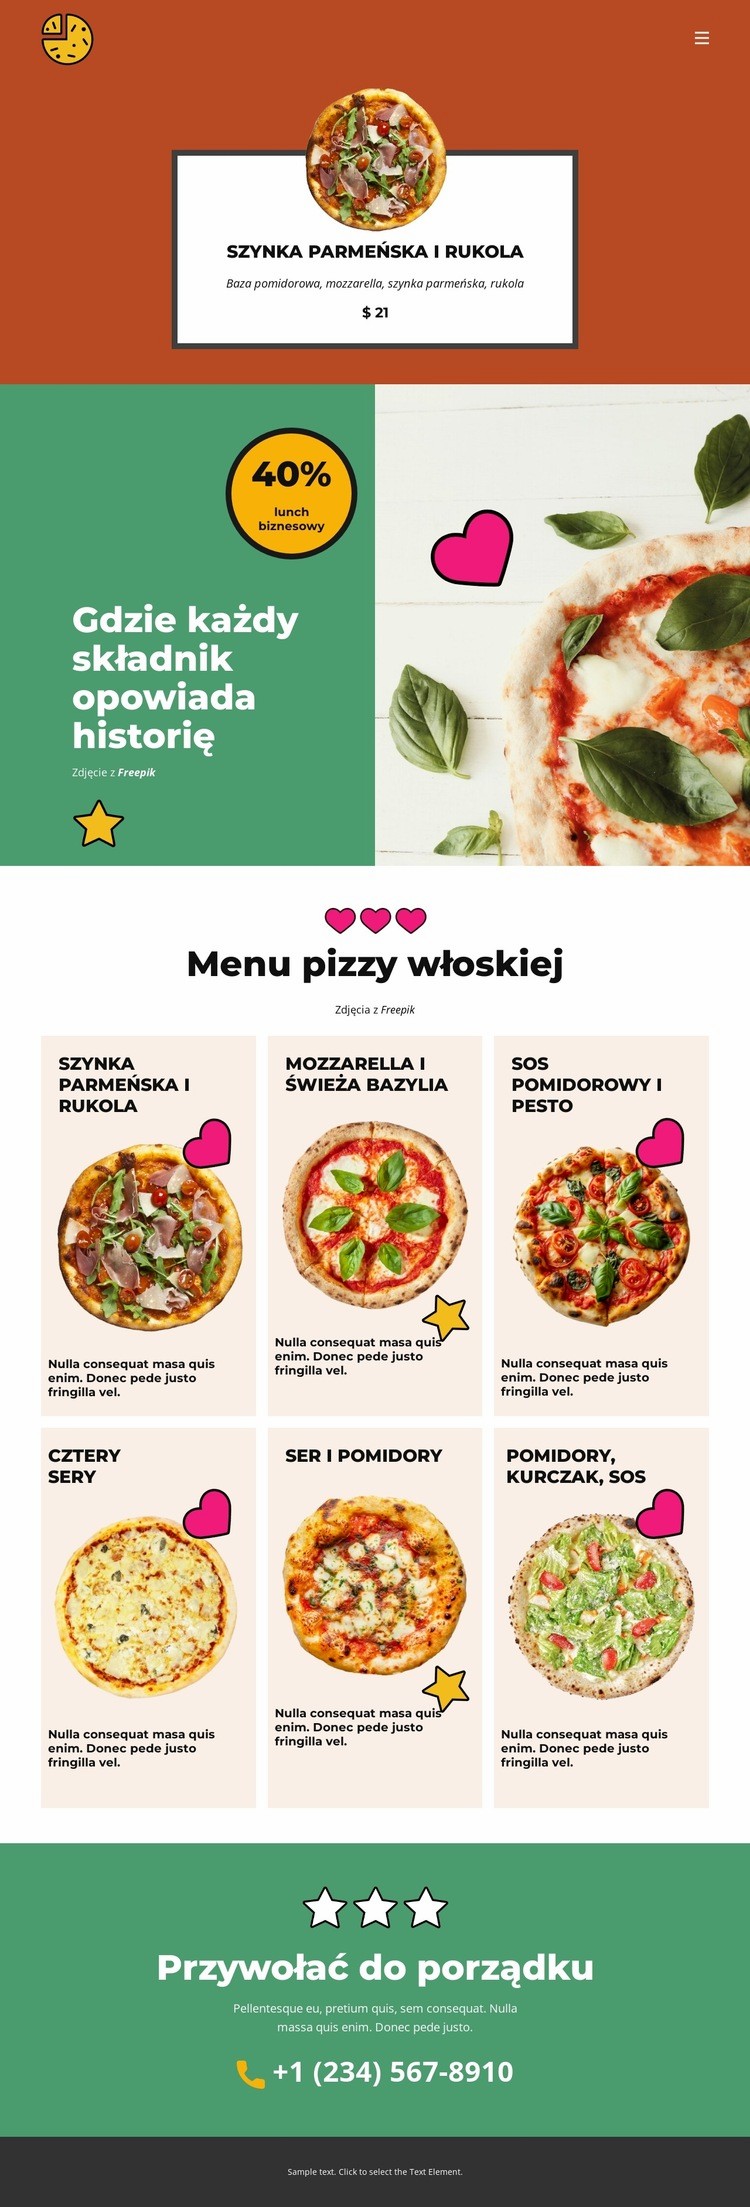 Fun Facts about Pizza Szablony do tworzenia witryn internetowych